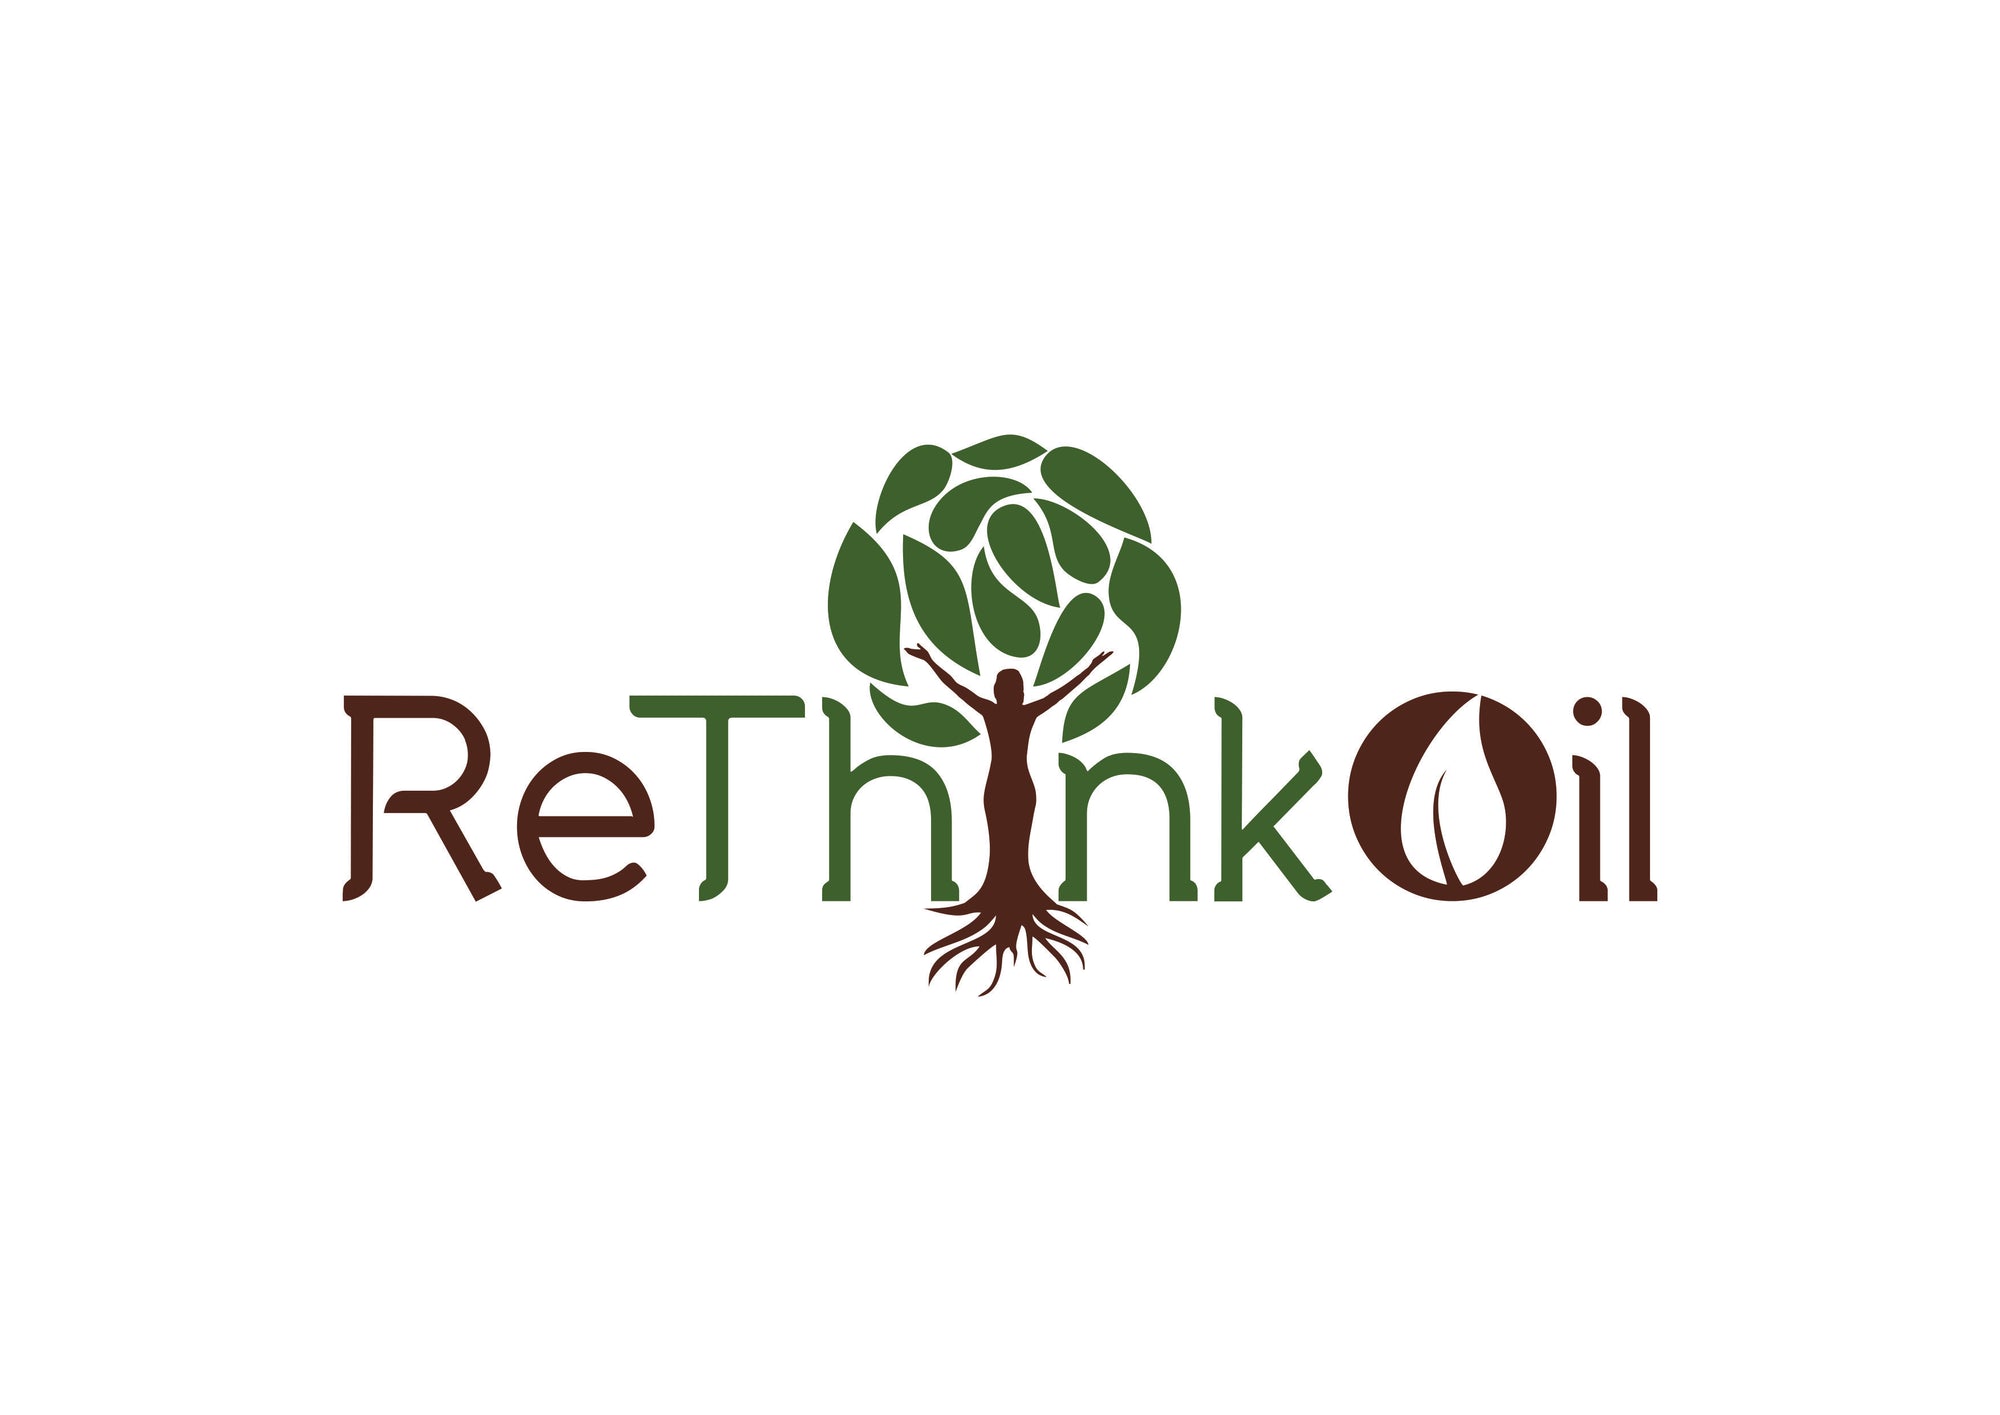 Organic Wild Mediterranean Oregano Oil- ReThinkOil 1 oz